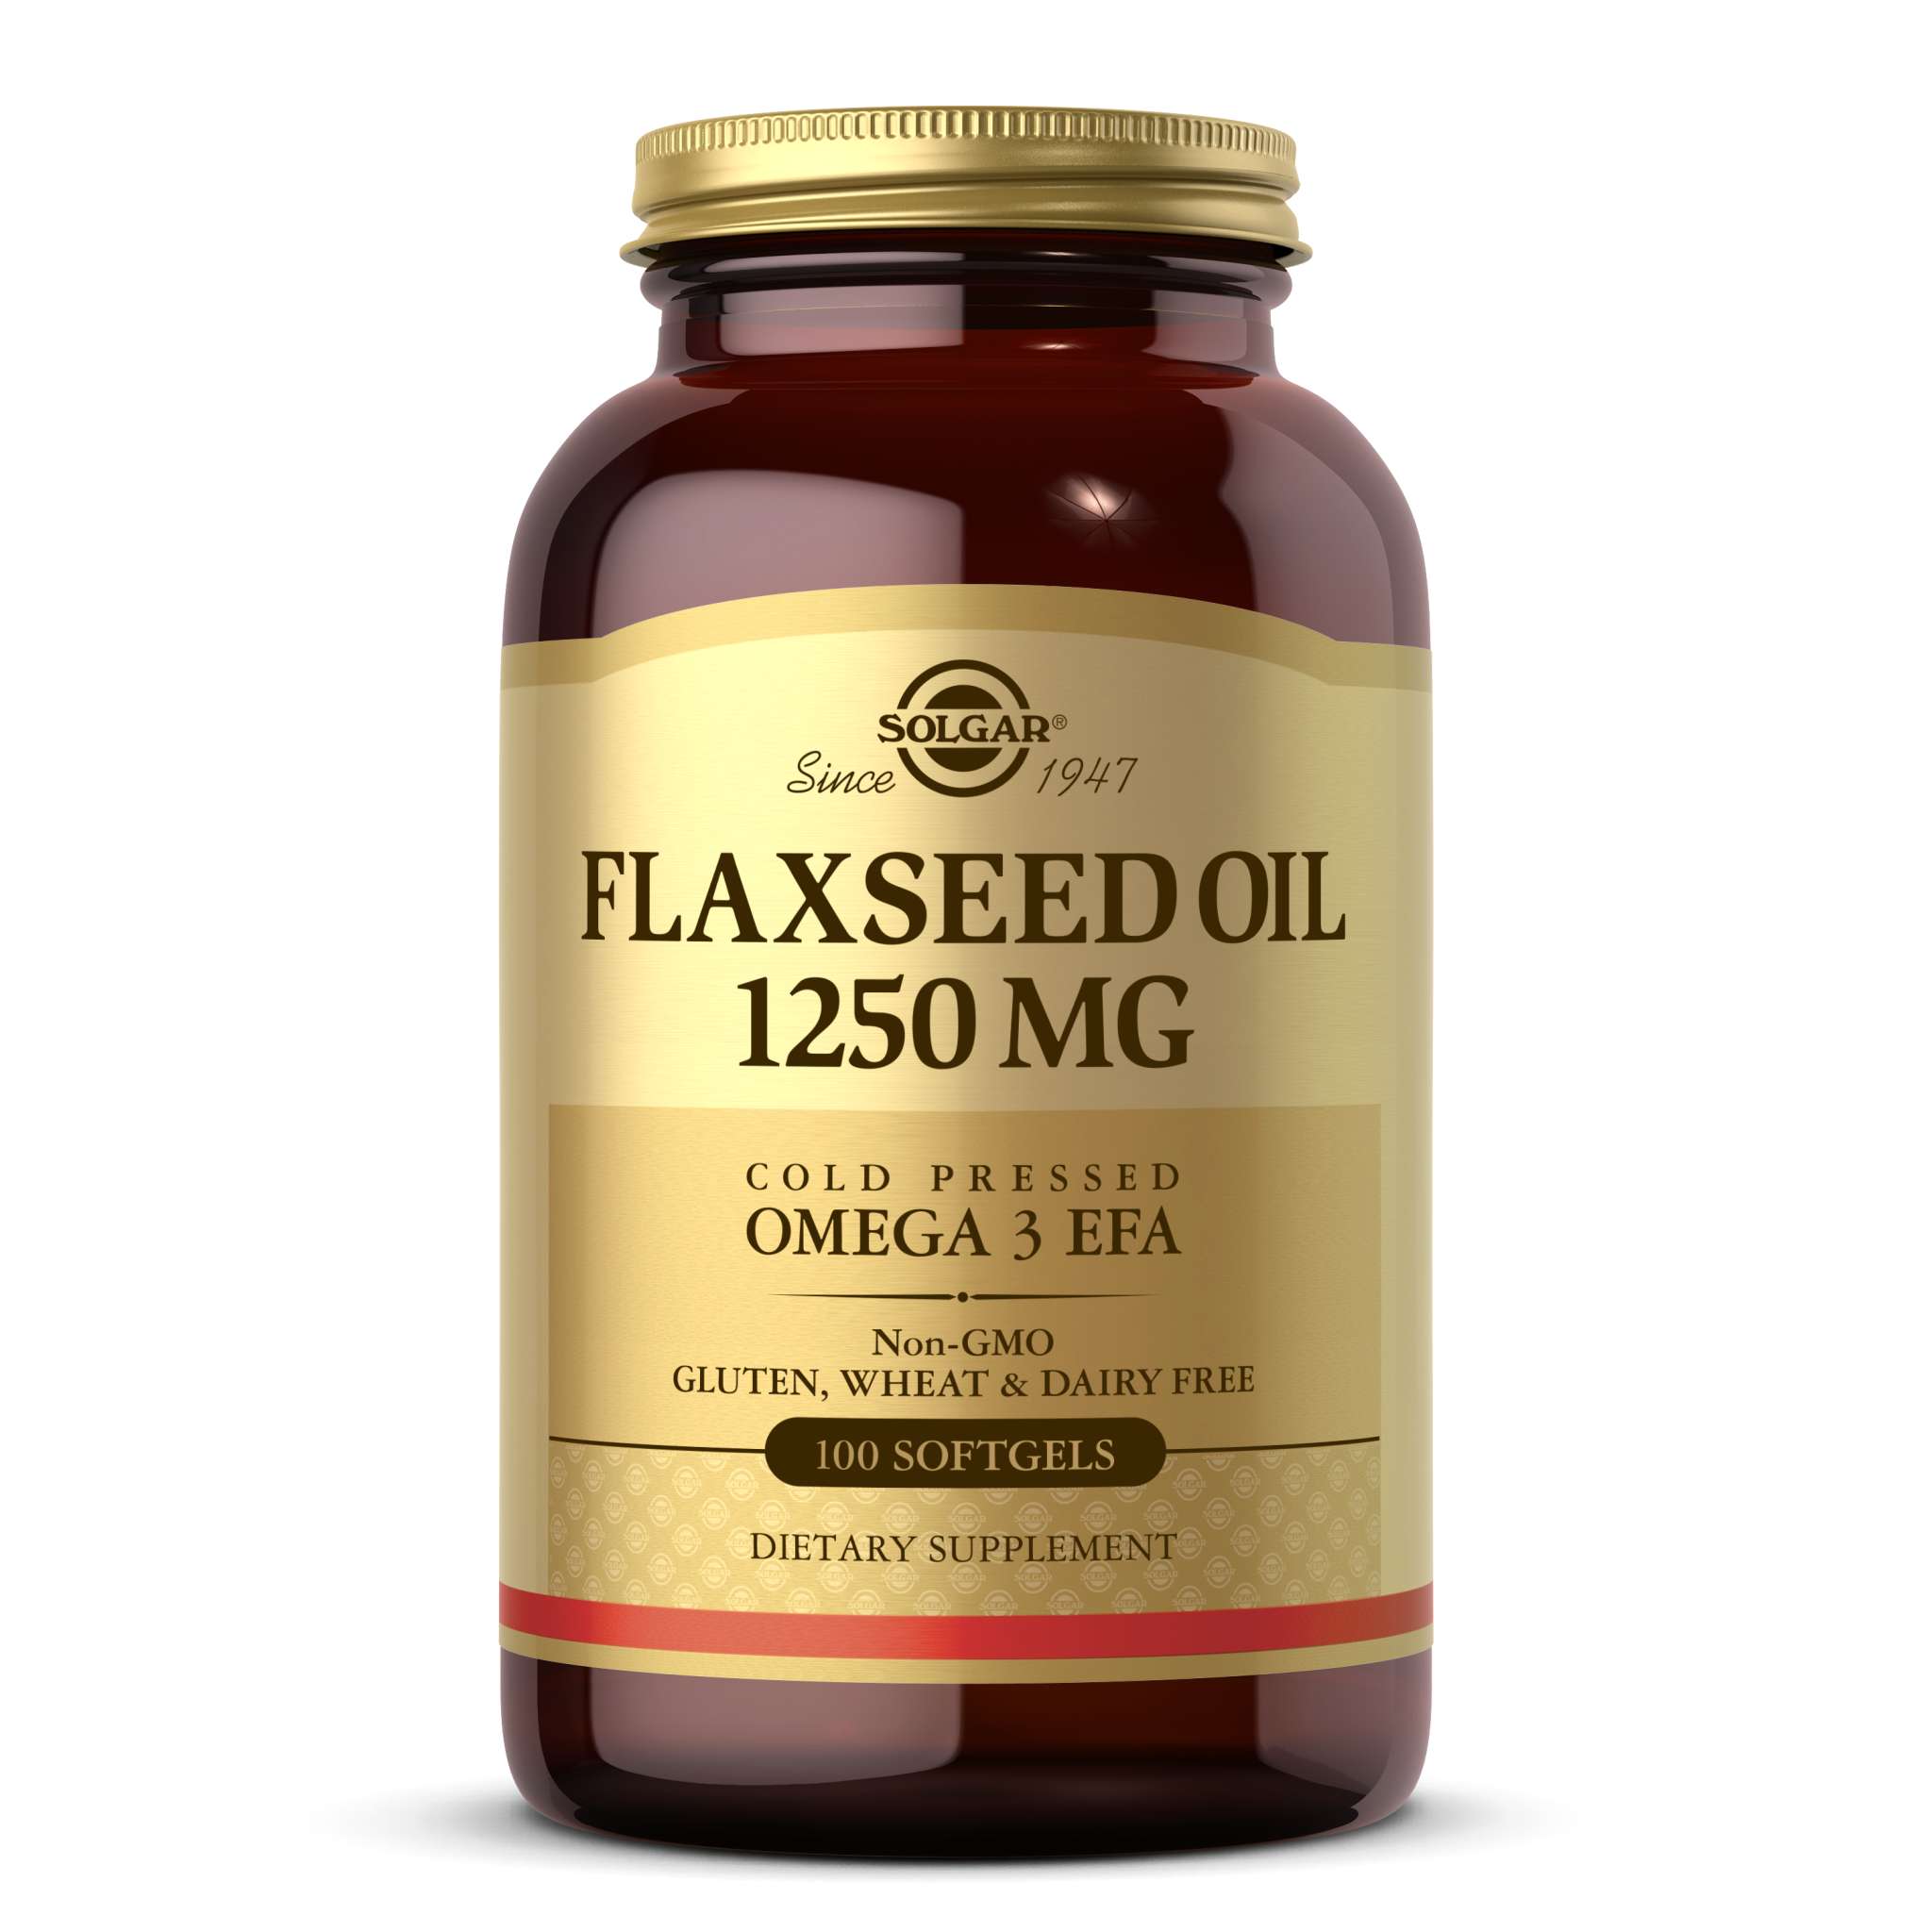 Solgar - Flaxseed Oil softgel 1250 mg